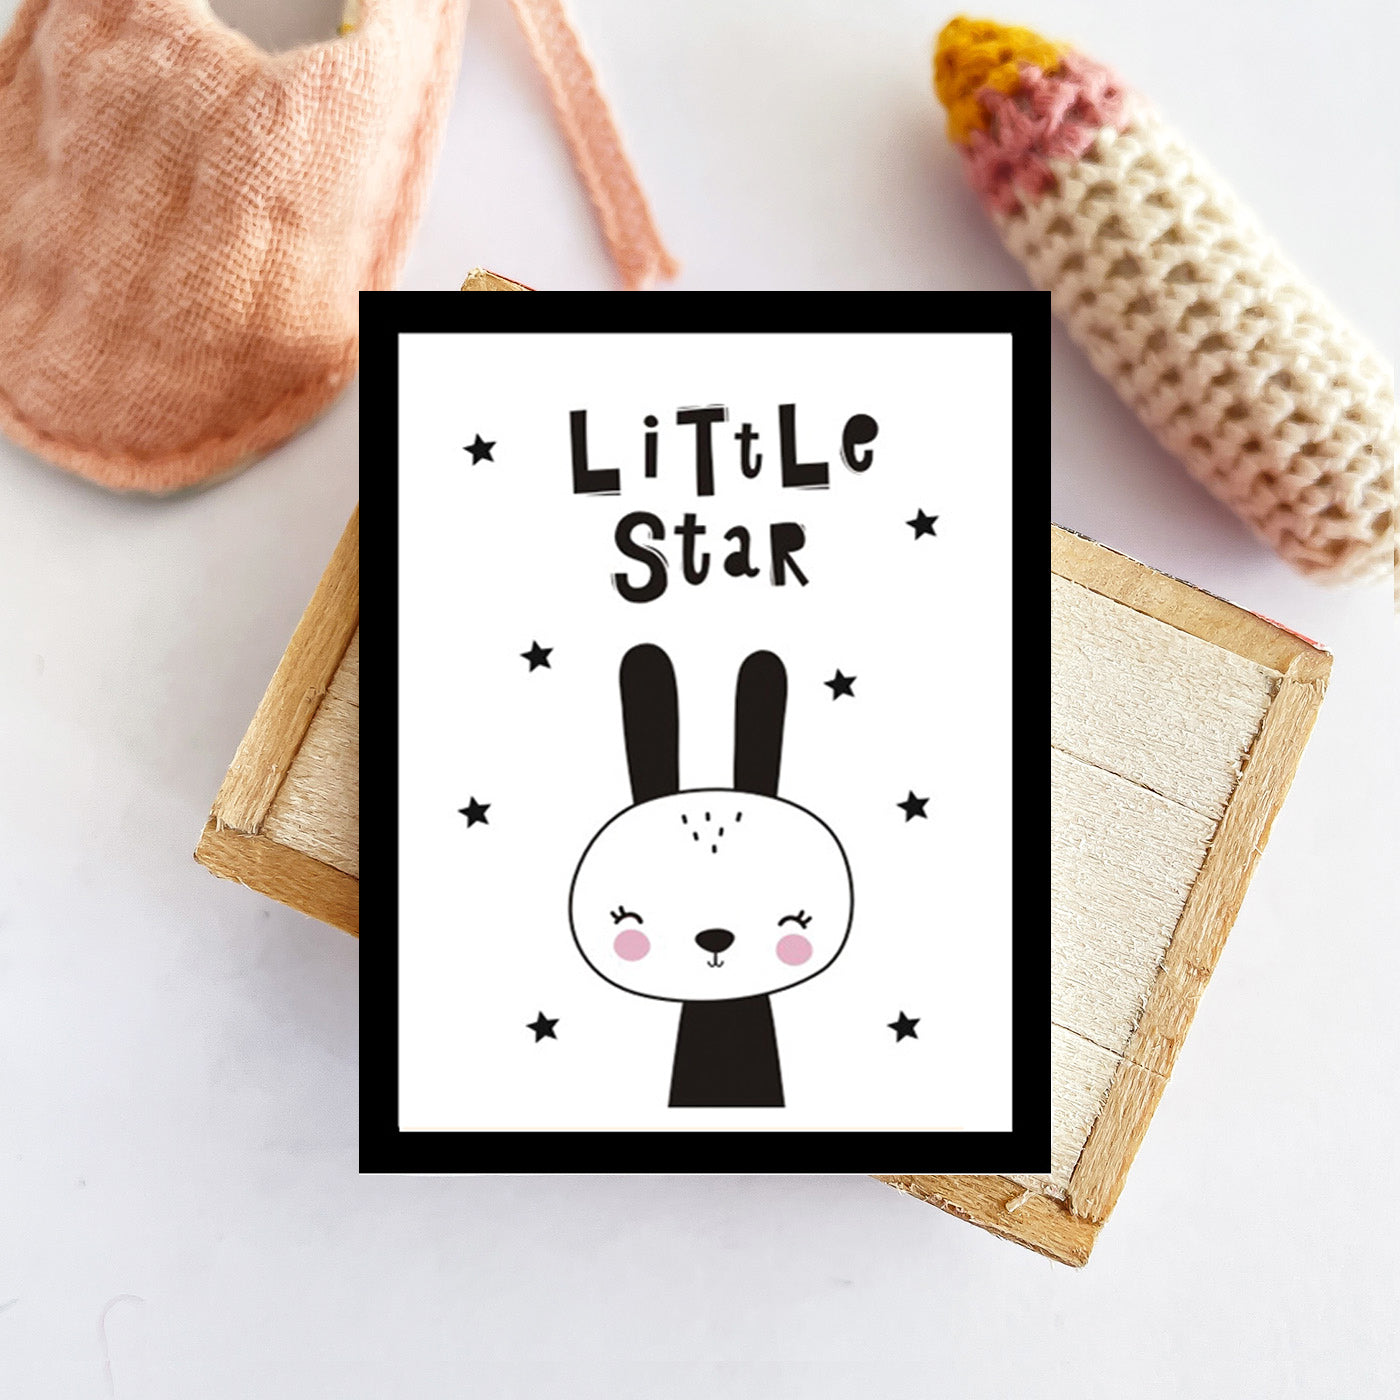 Miniature Wall Art - Little Star Rabbit